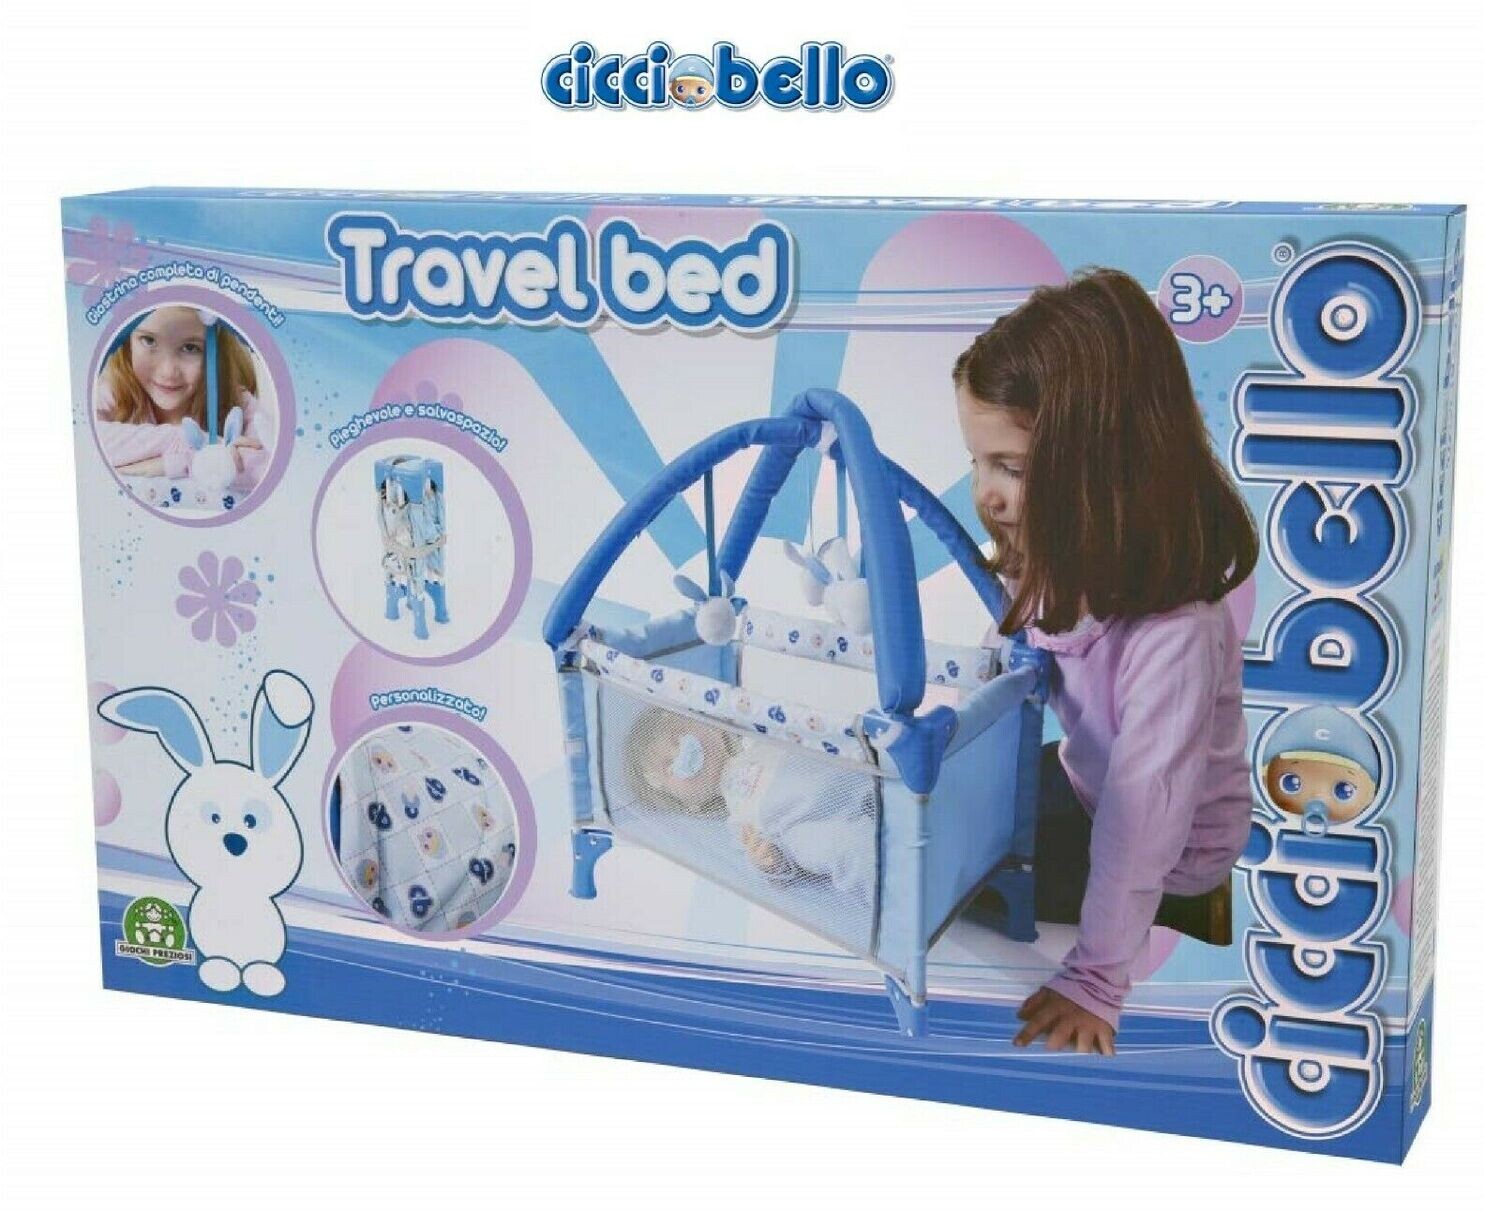 Cicciobello Travel Bed Ccb26000